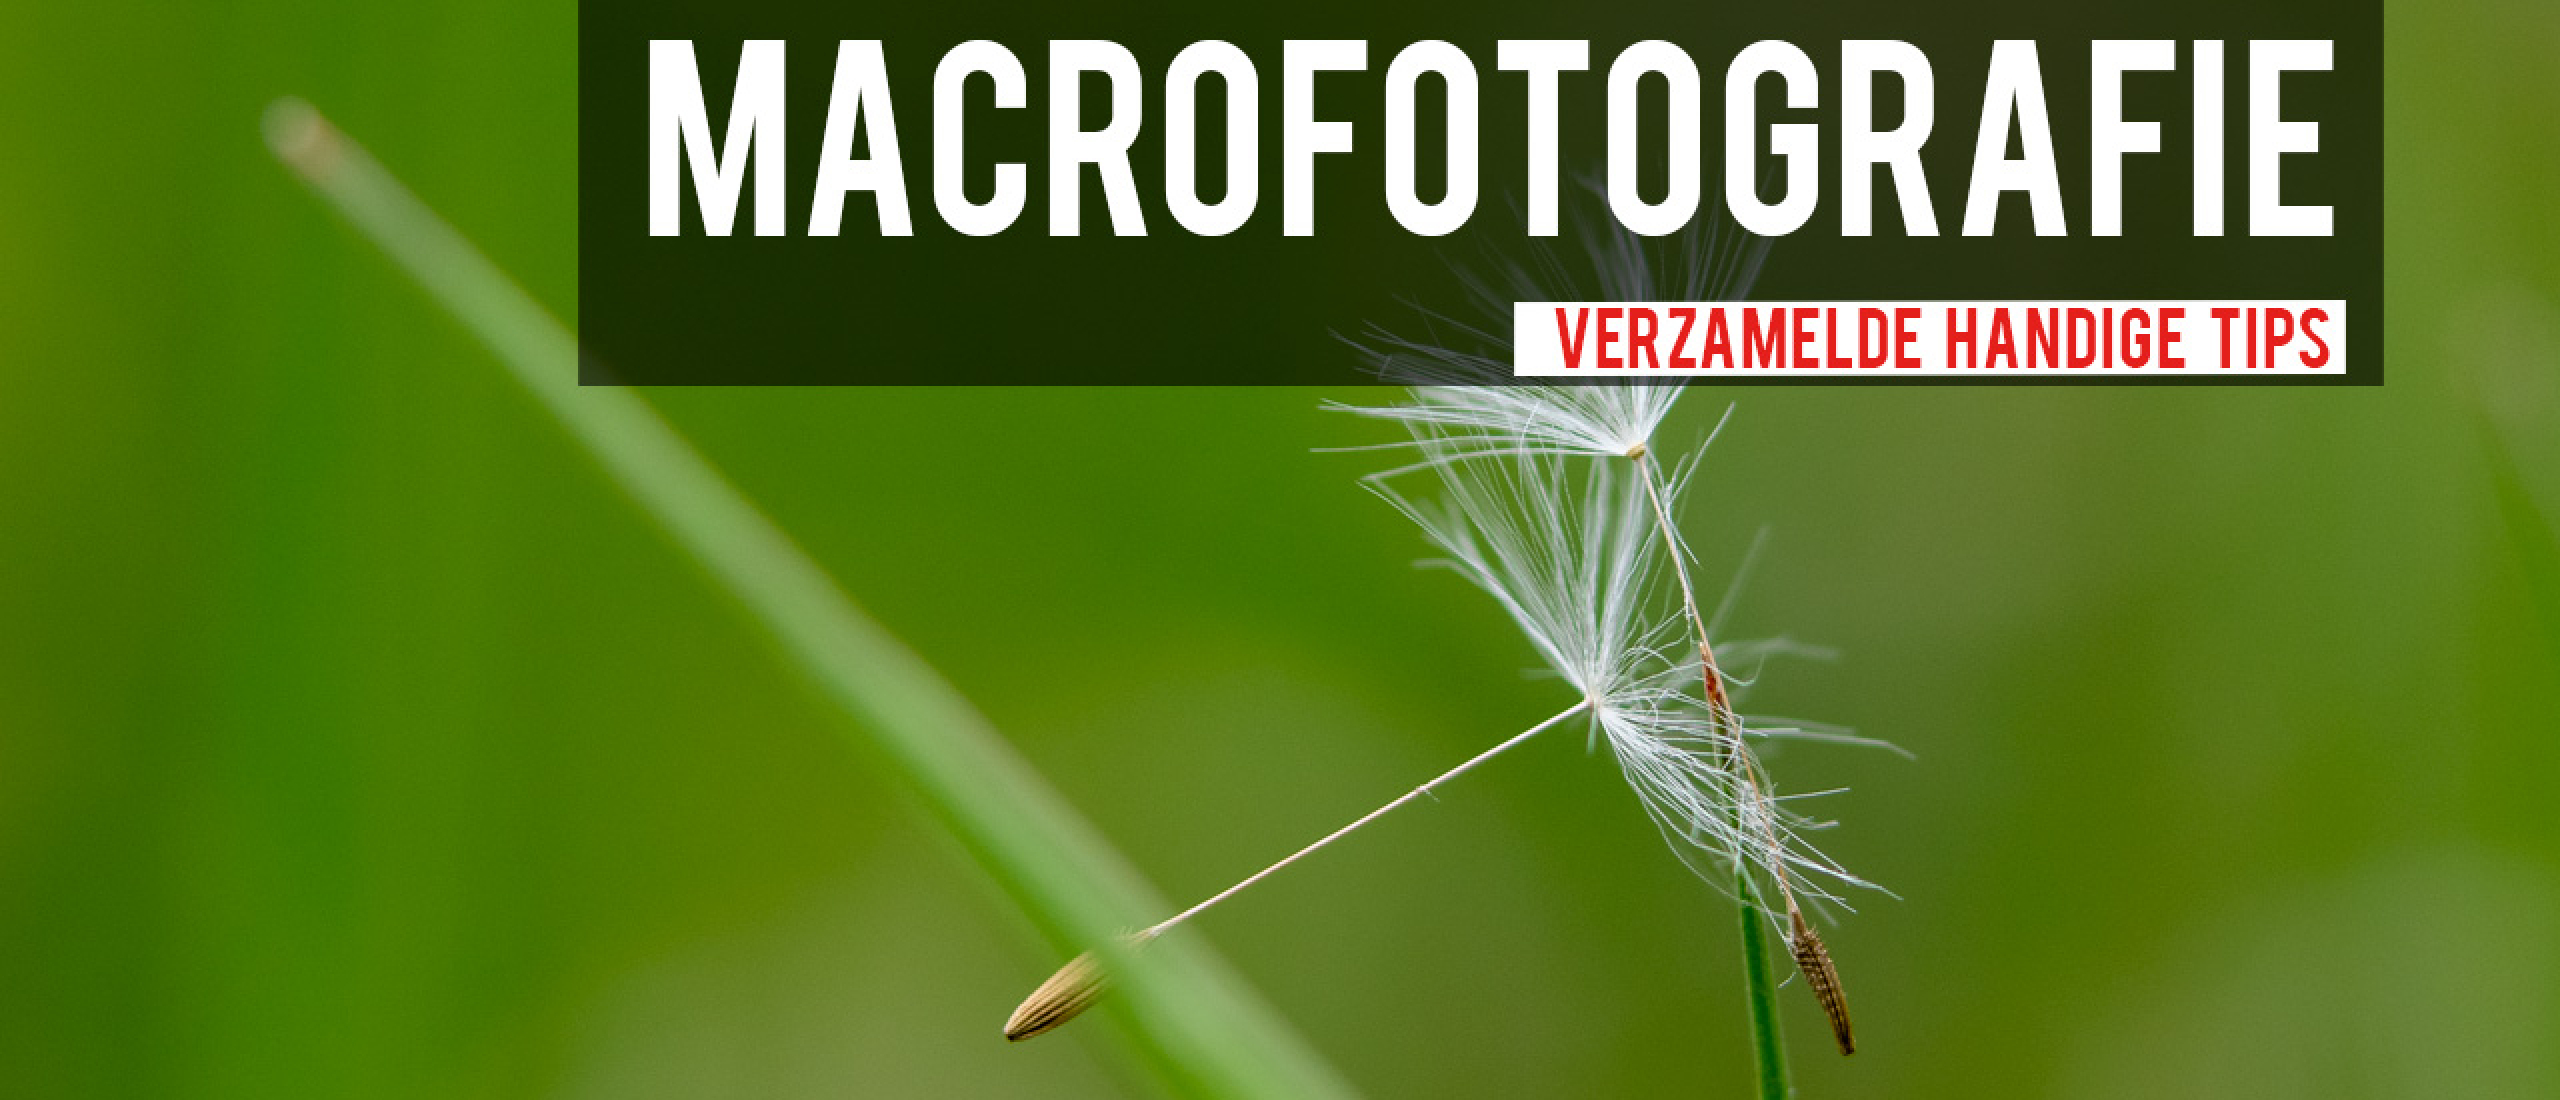 Serie handige tips voor macrofotografie